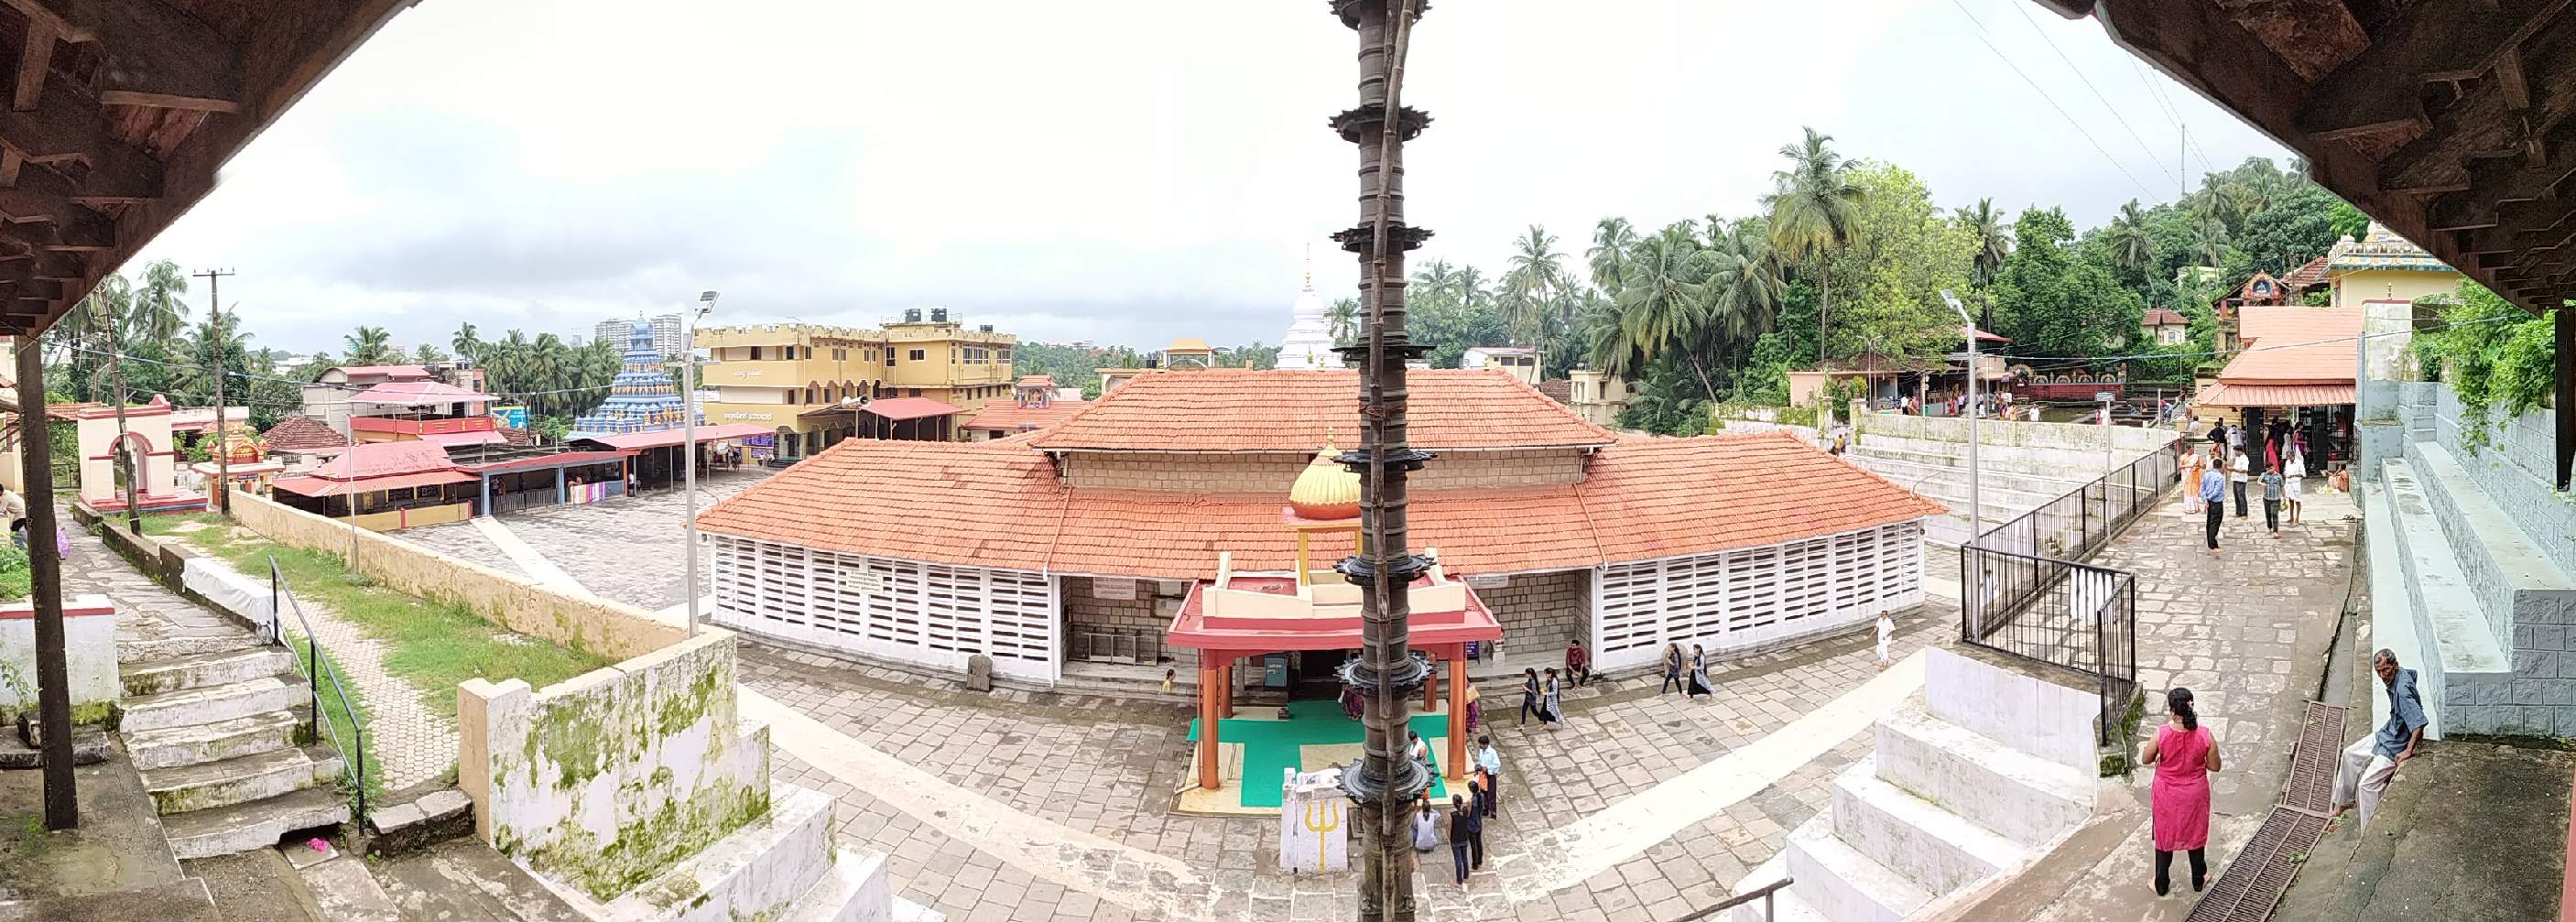 Mangalore - Gokarnanatheshwara Temple with  St. Aloysius Chapel